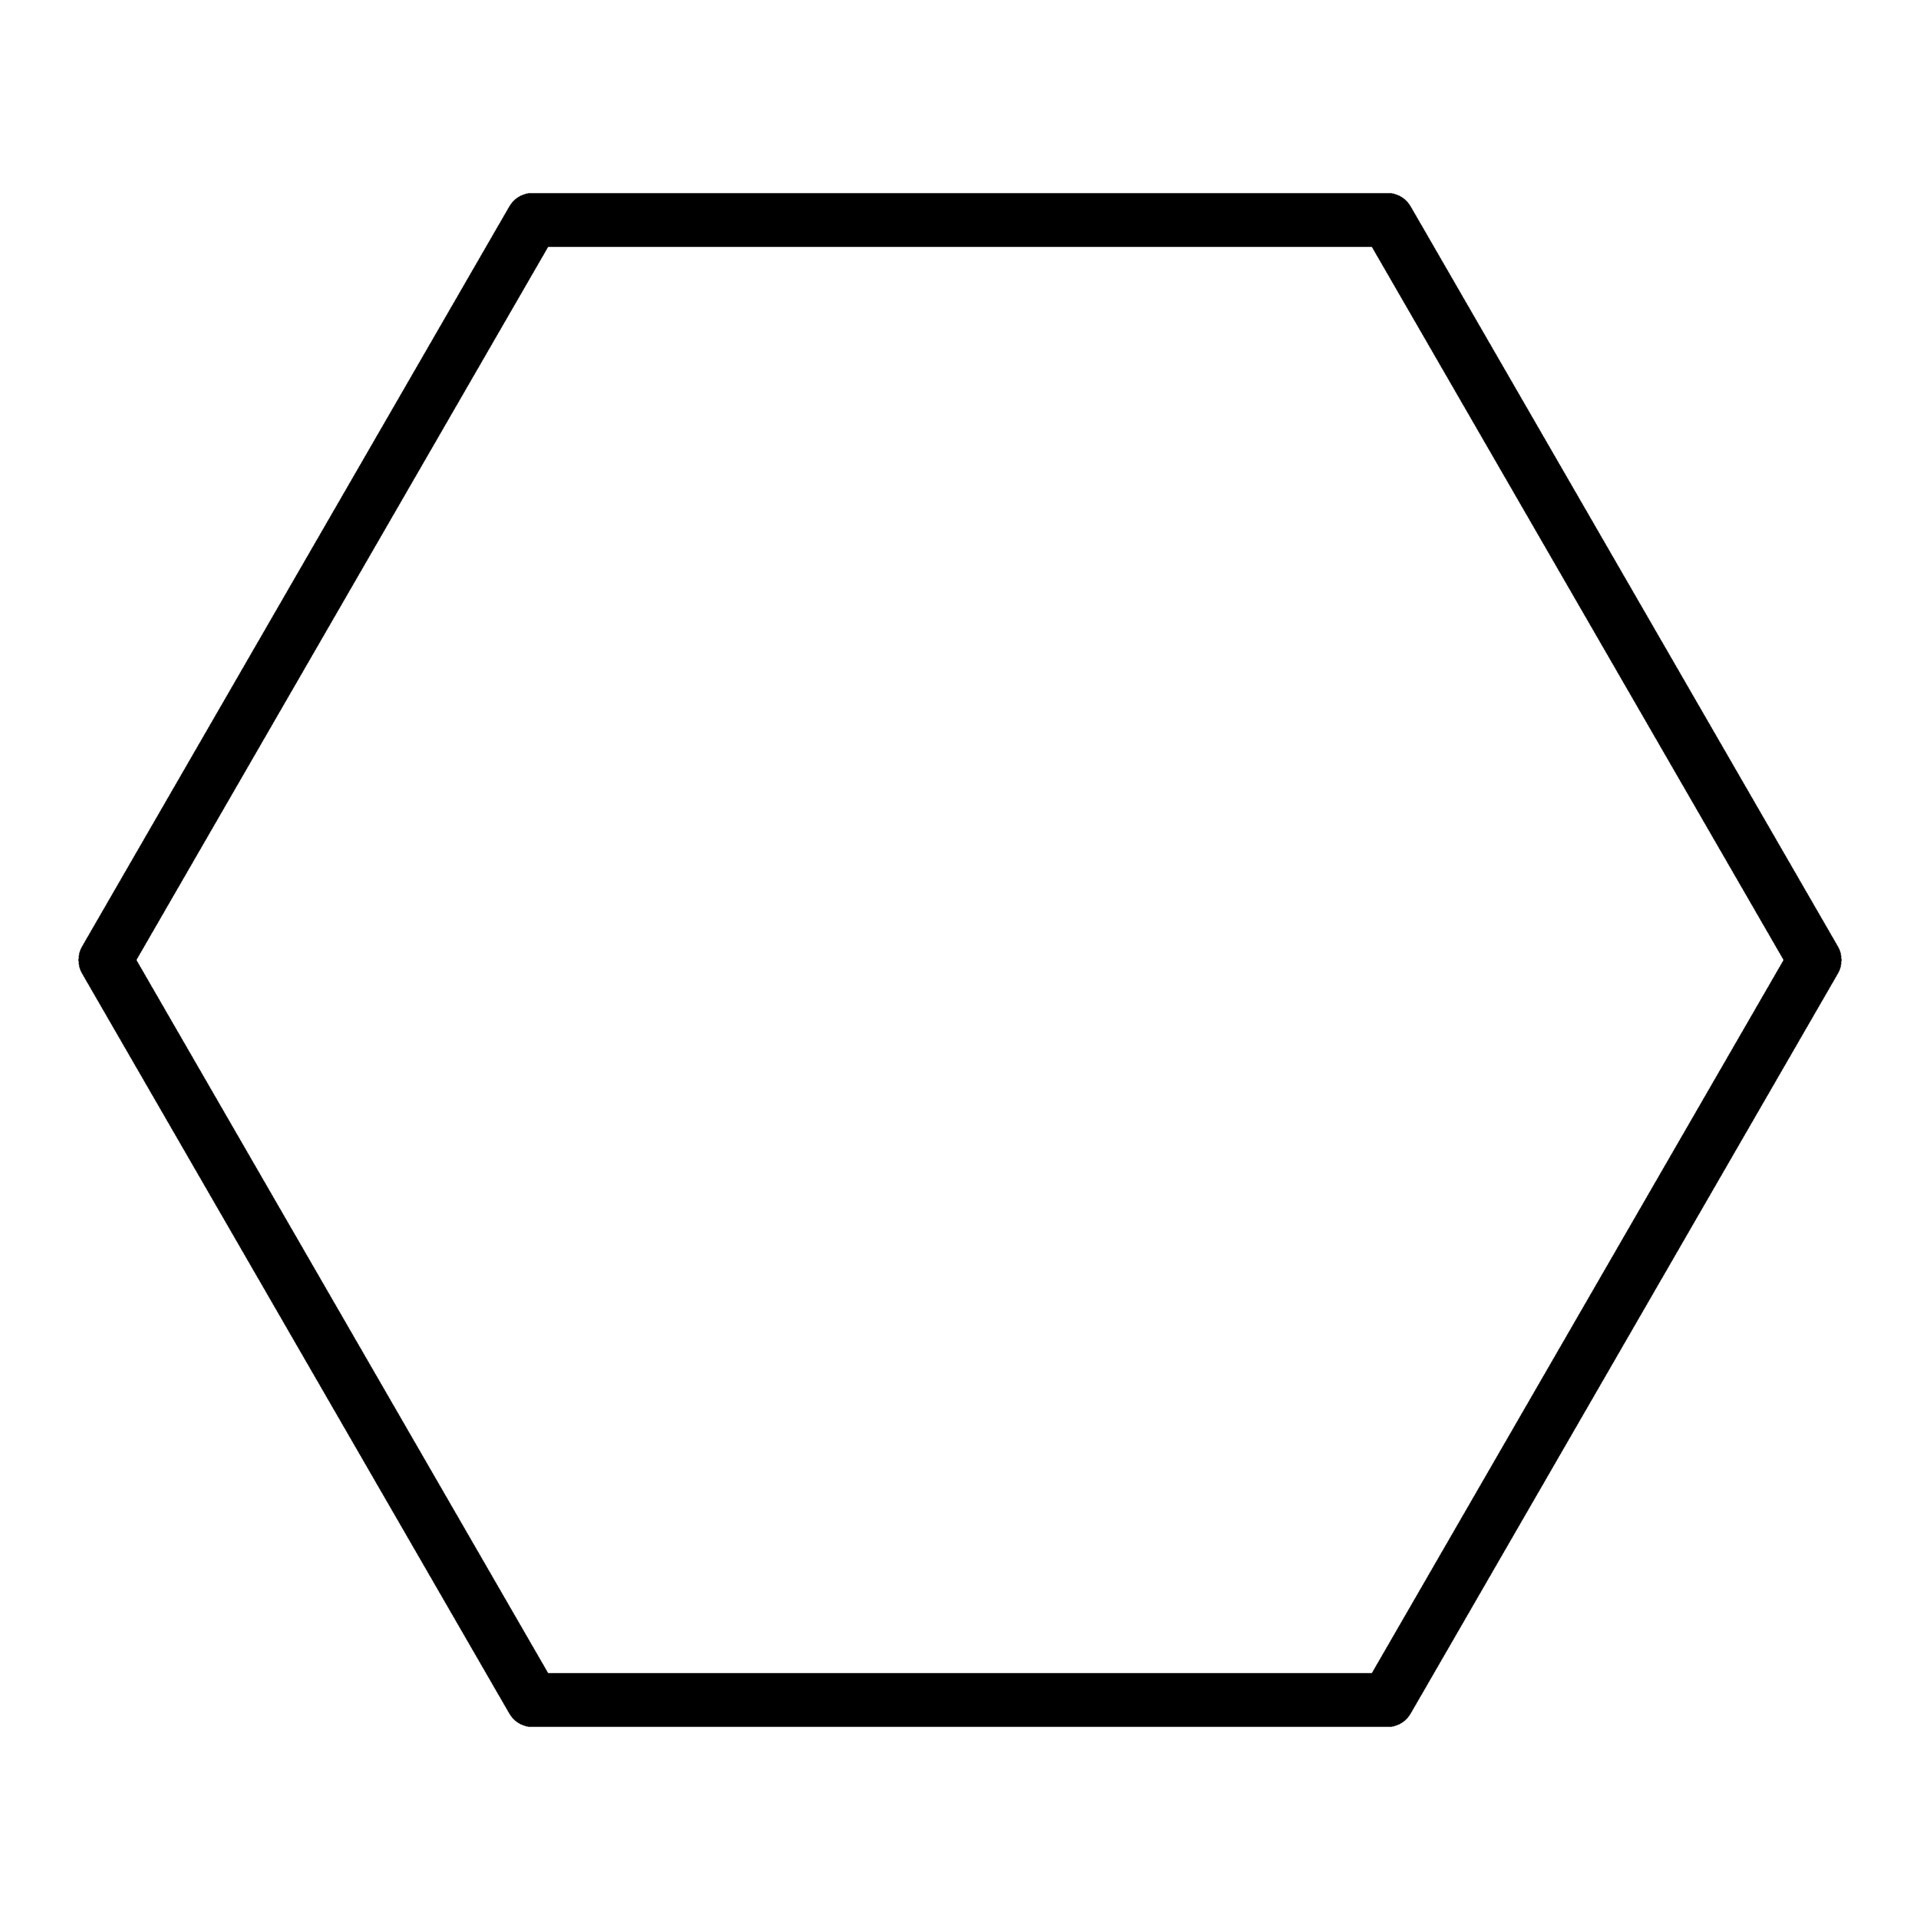 Hexagonal symbol. Hexagonal shape. Vector. 26530438 Vector Art at Vecteezy